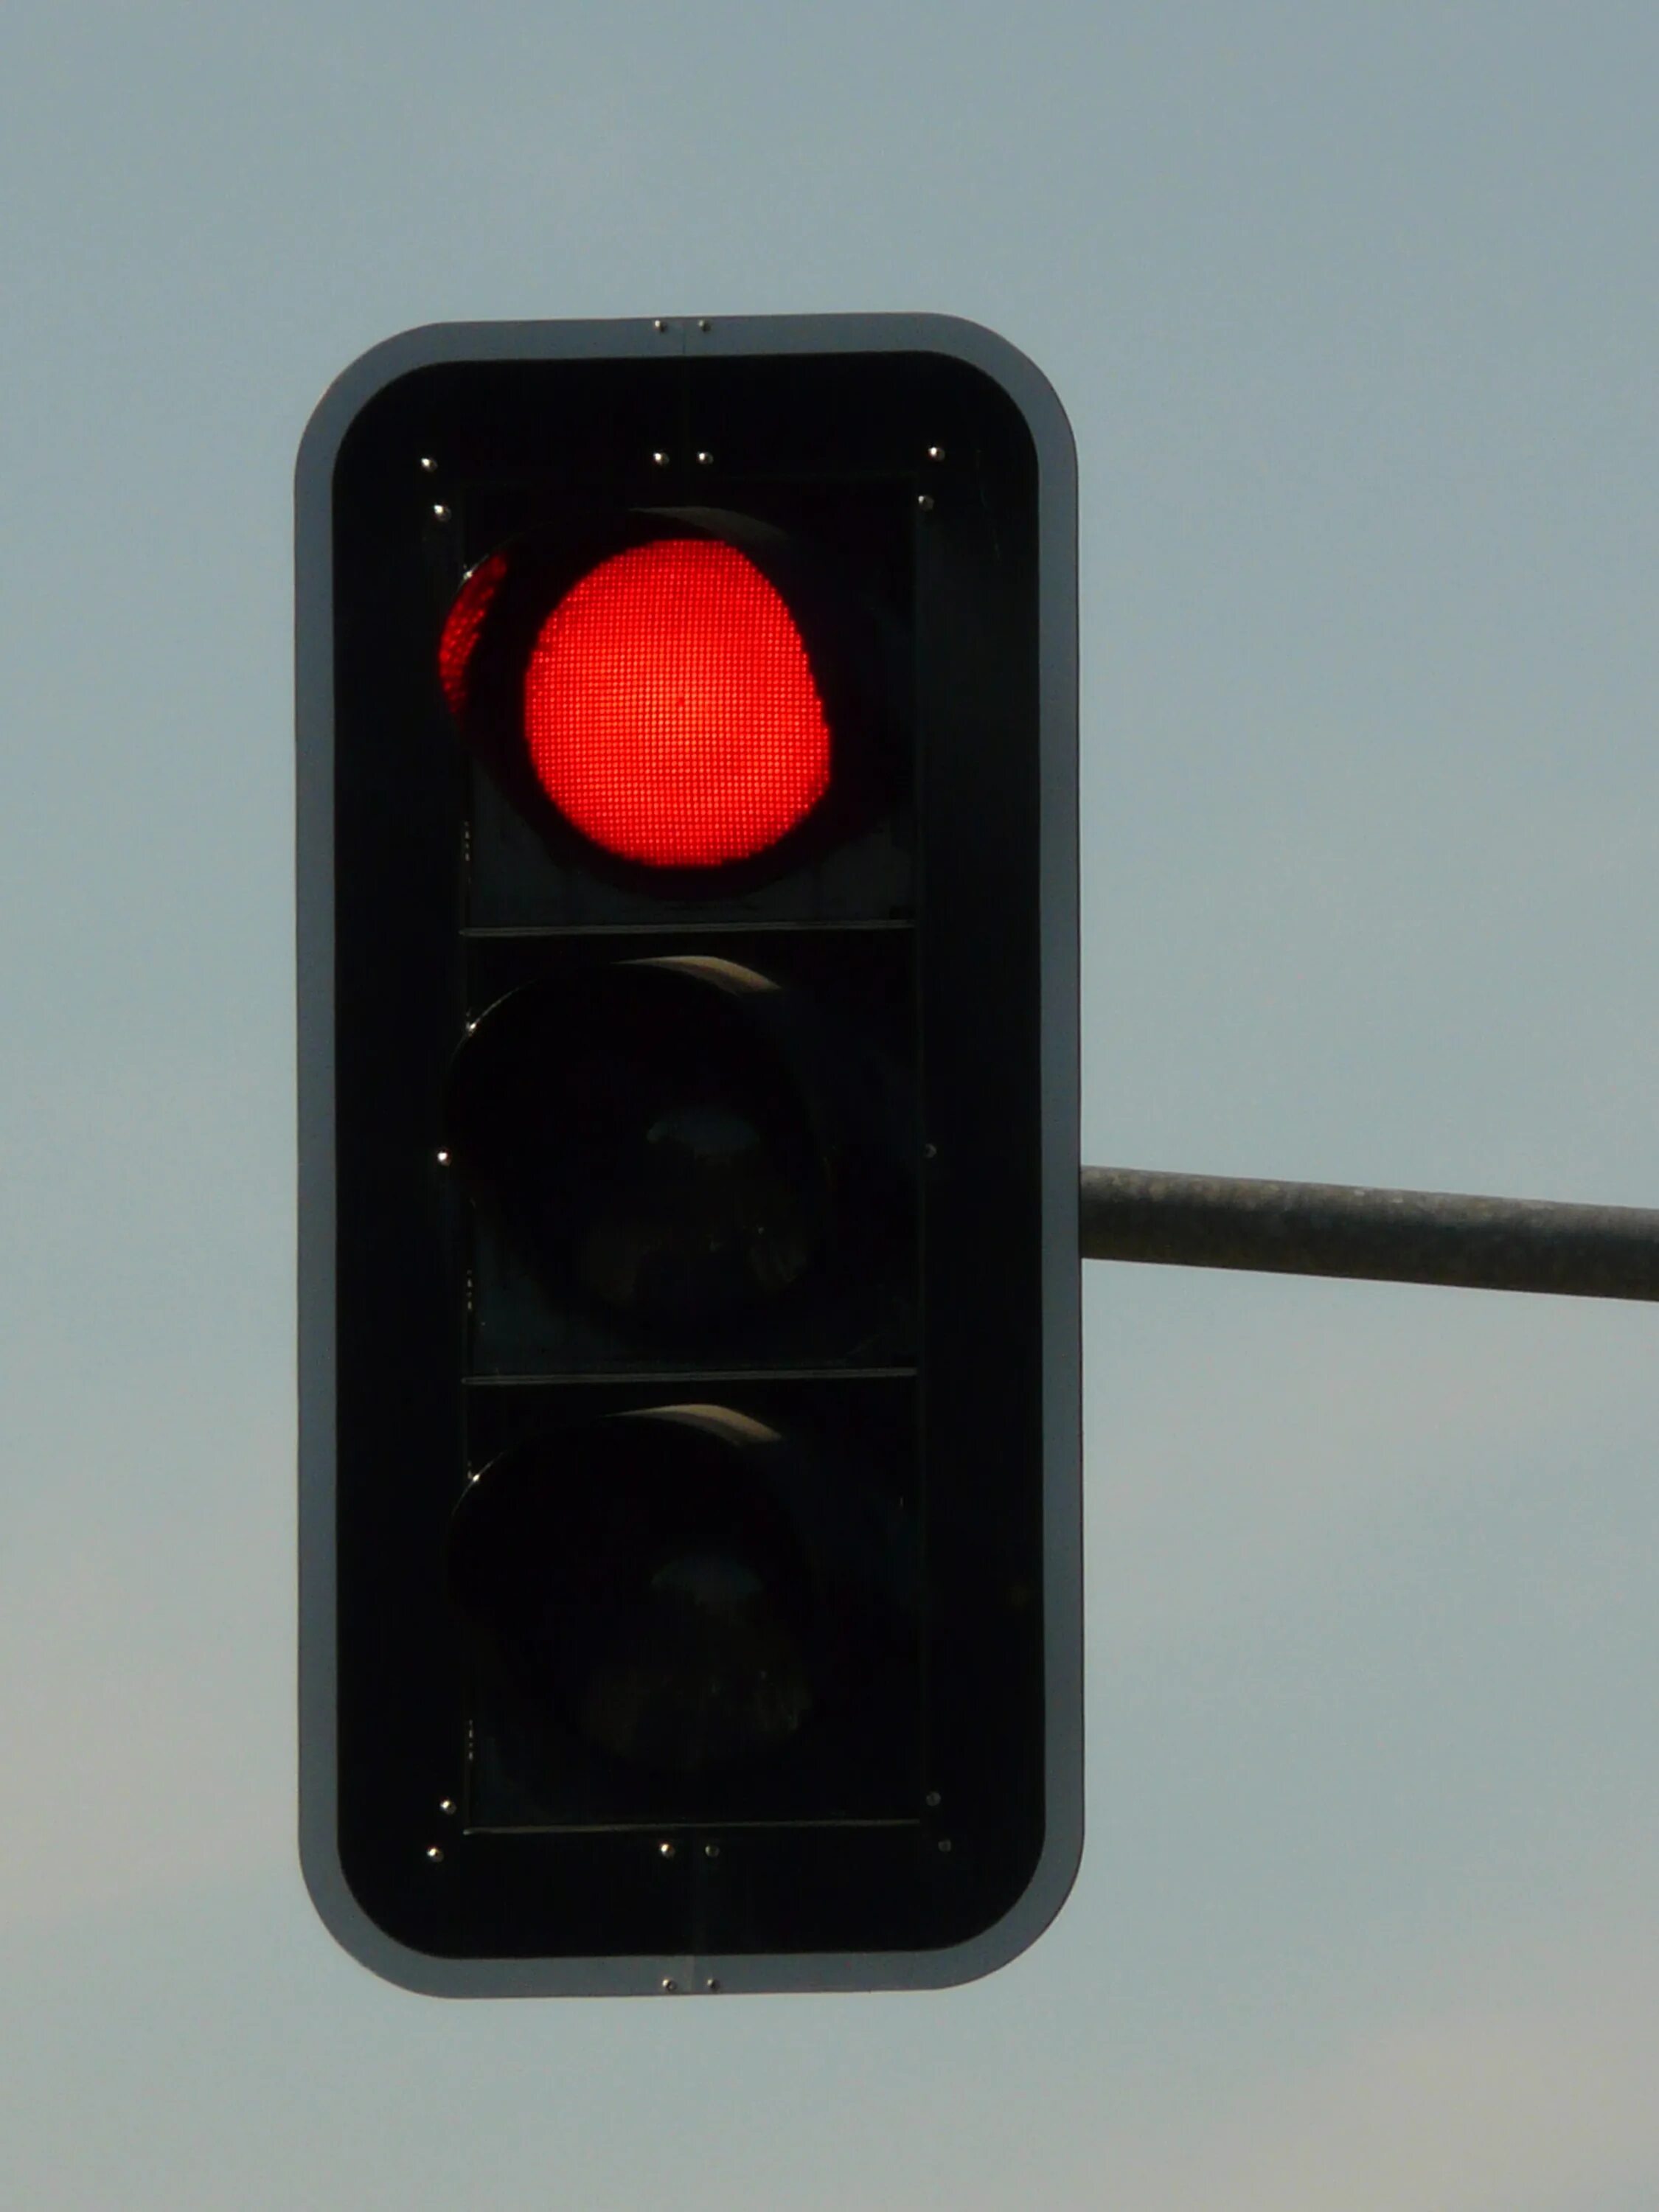 Я лечу на красный свет. Аварийный сигнал для автокрана светофор. Красный светофор. Красный сигнал светофора. Красный цвет светофора.